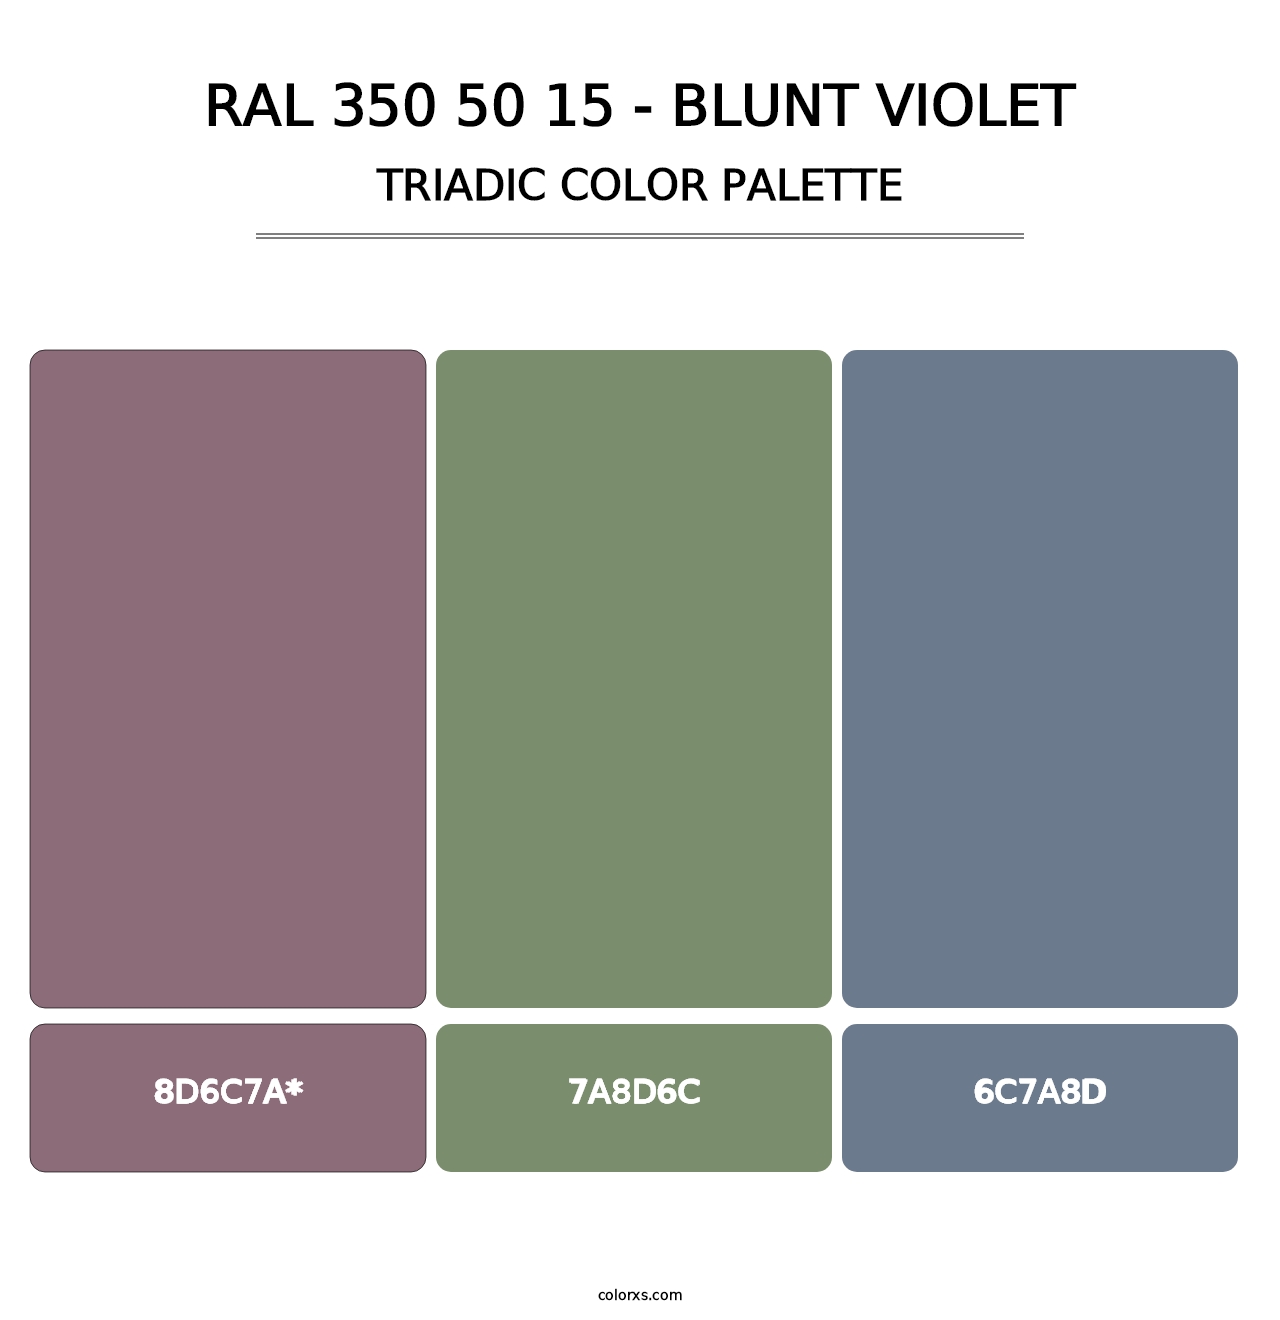 RAL 350 50 15 - Blunt Violet - Triadic Color Palette